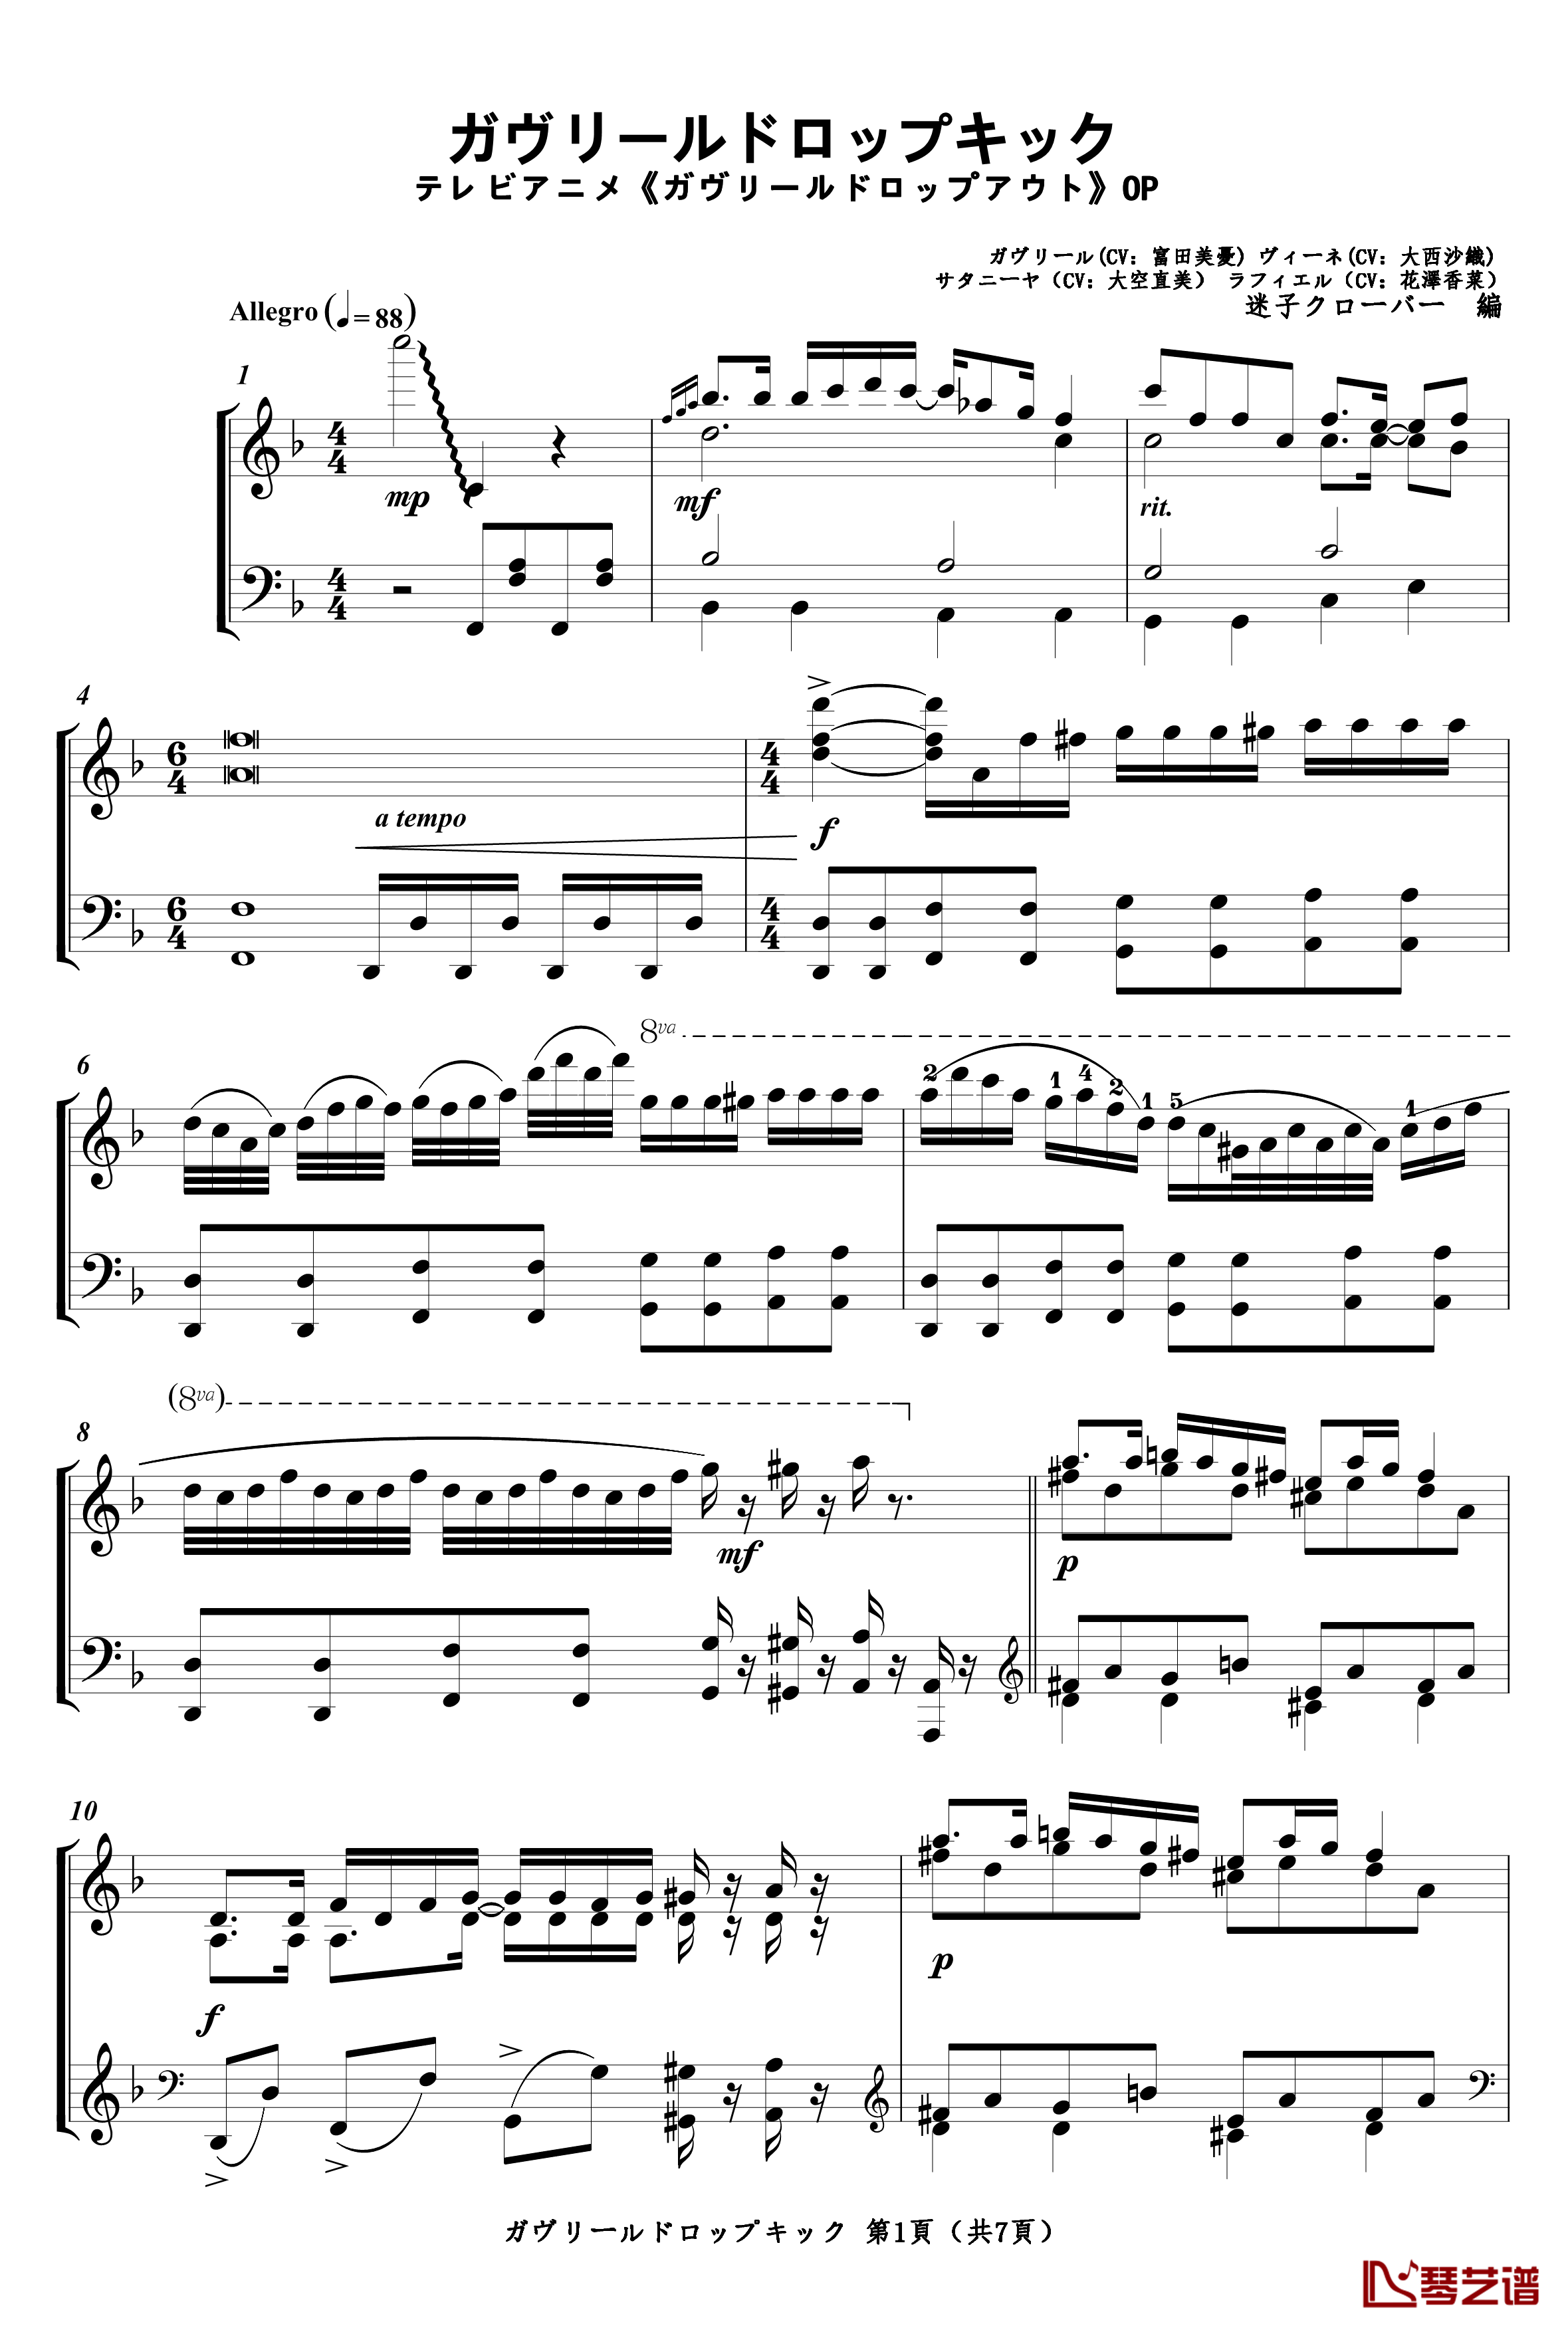 珈百璃的堕落OP钢琴谱--ガヴリールドロップキック1